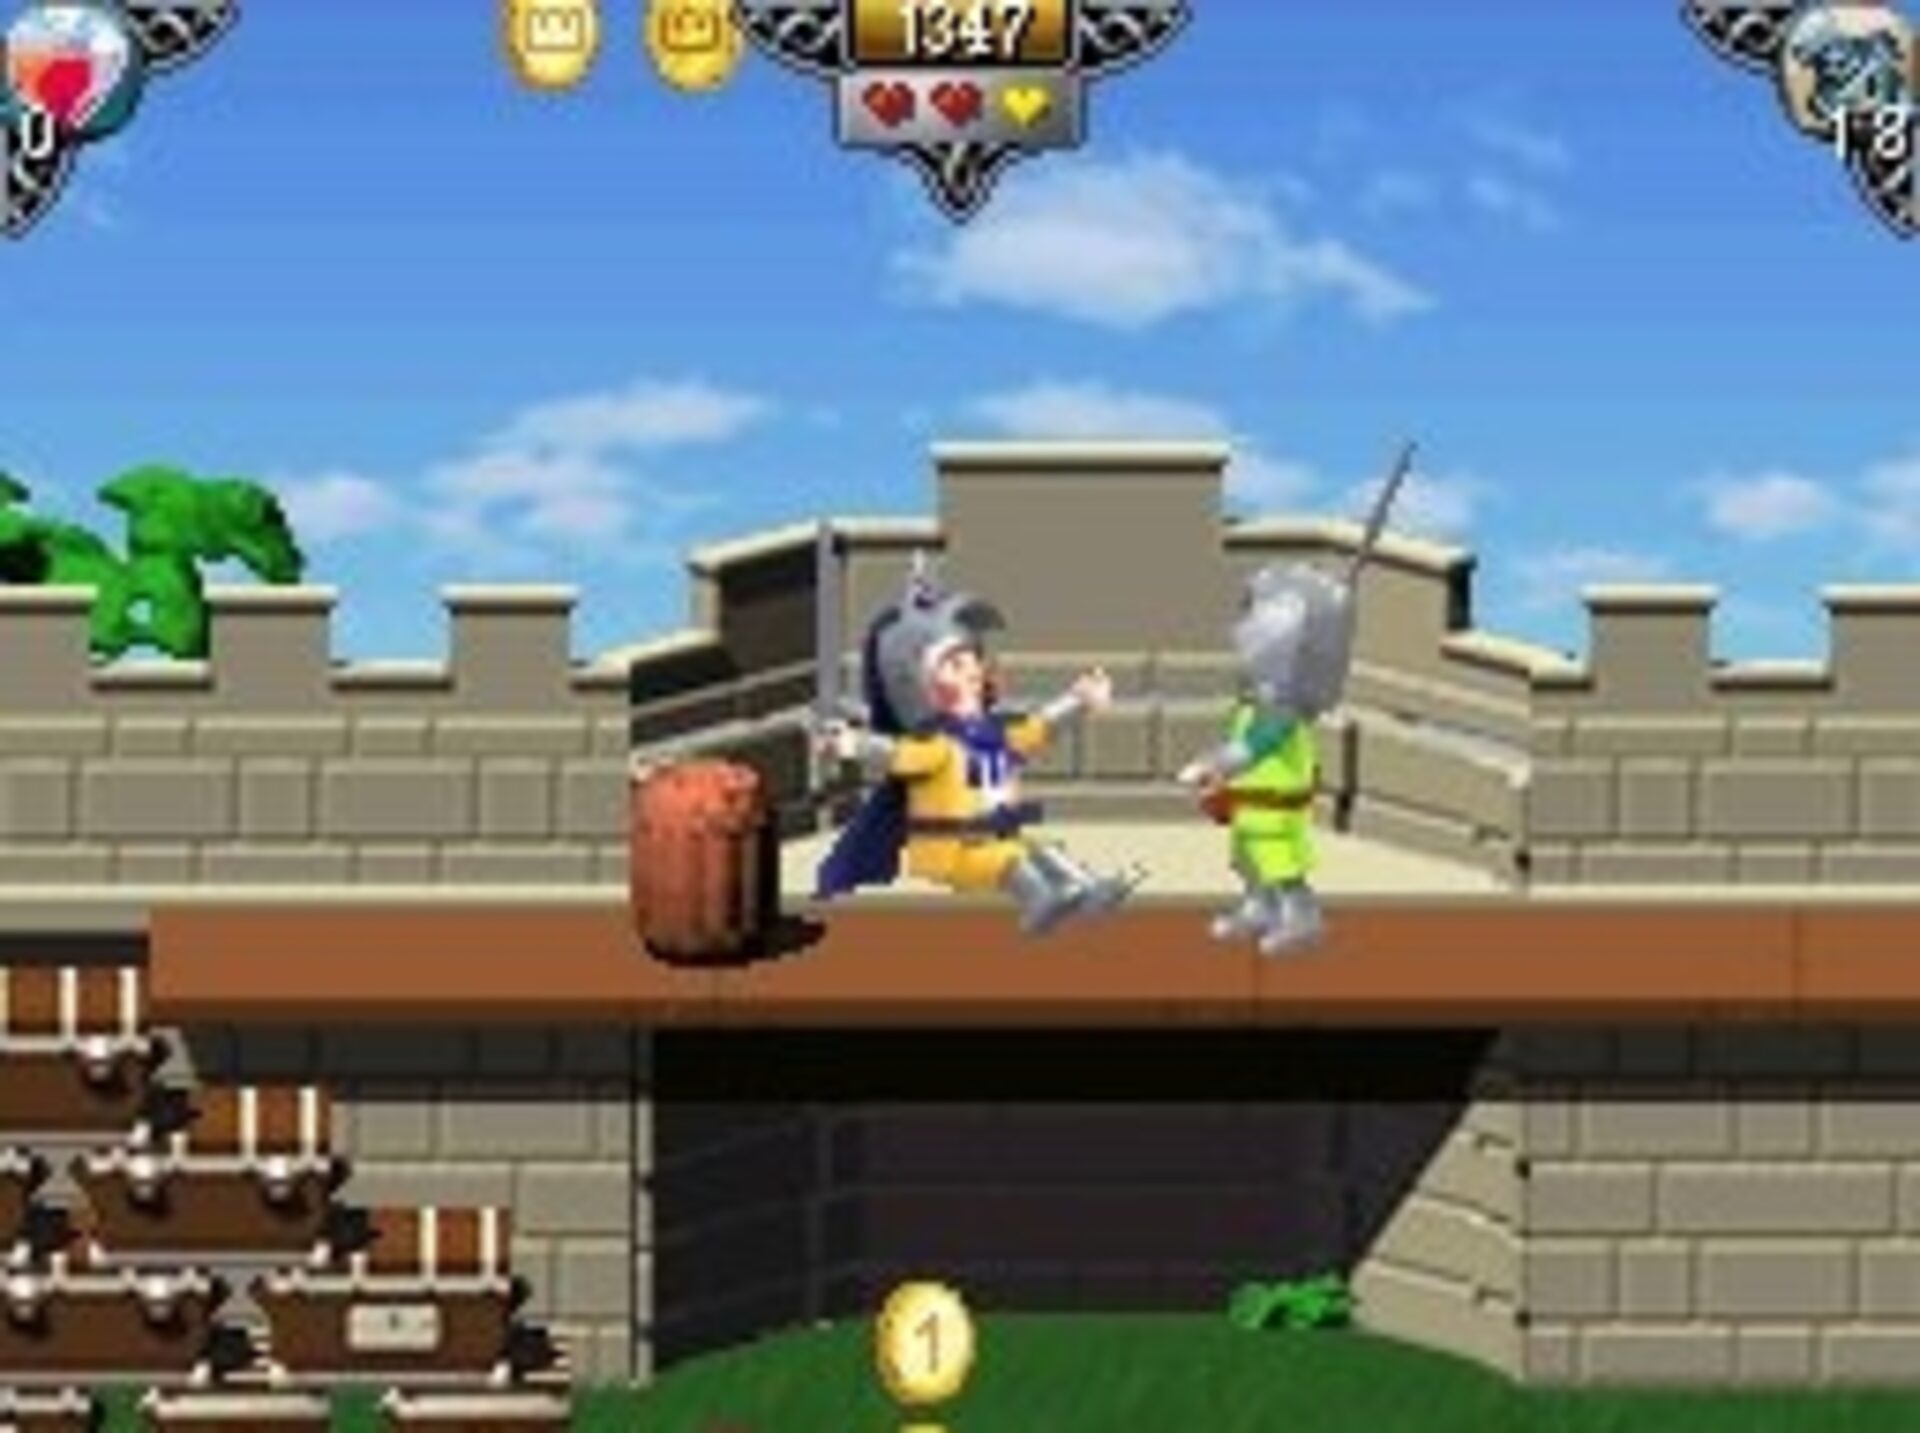 Playmobil Interactive Chevalier : Héros du Royaume sur Nintendo DS 